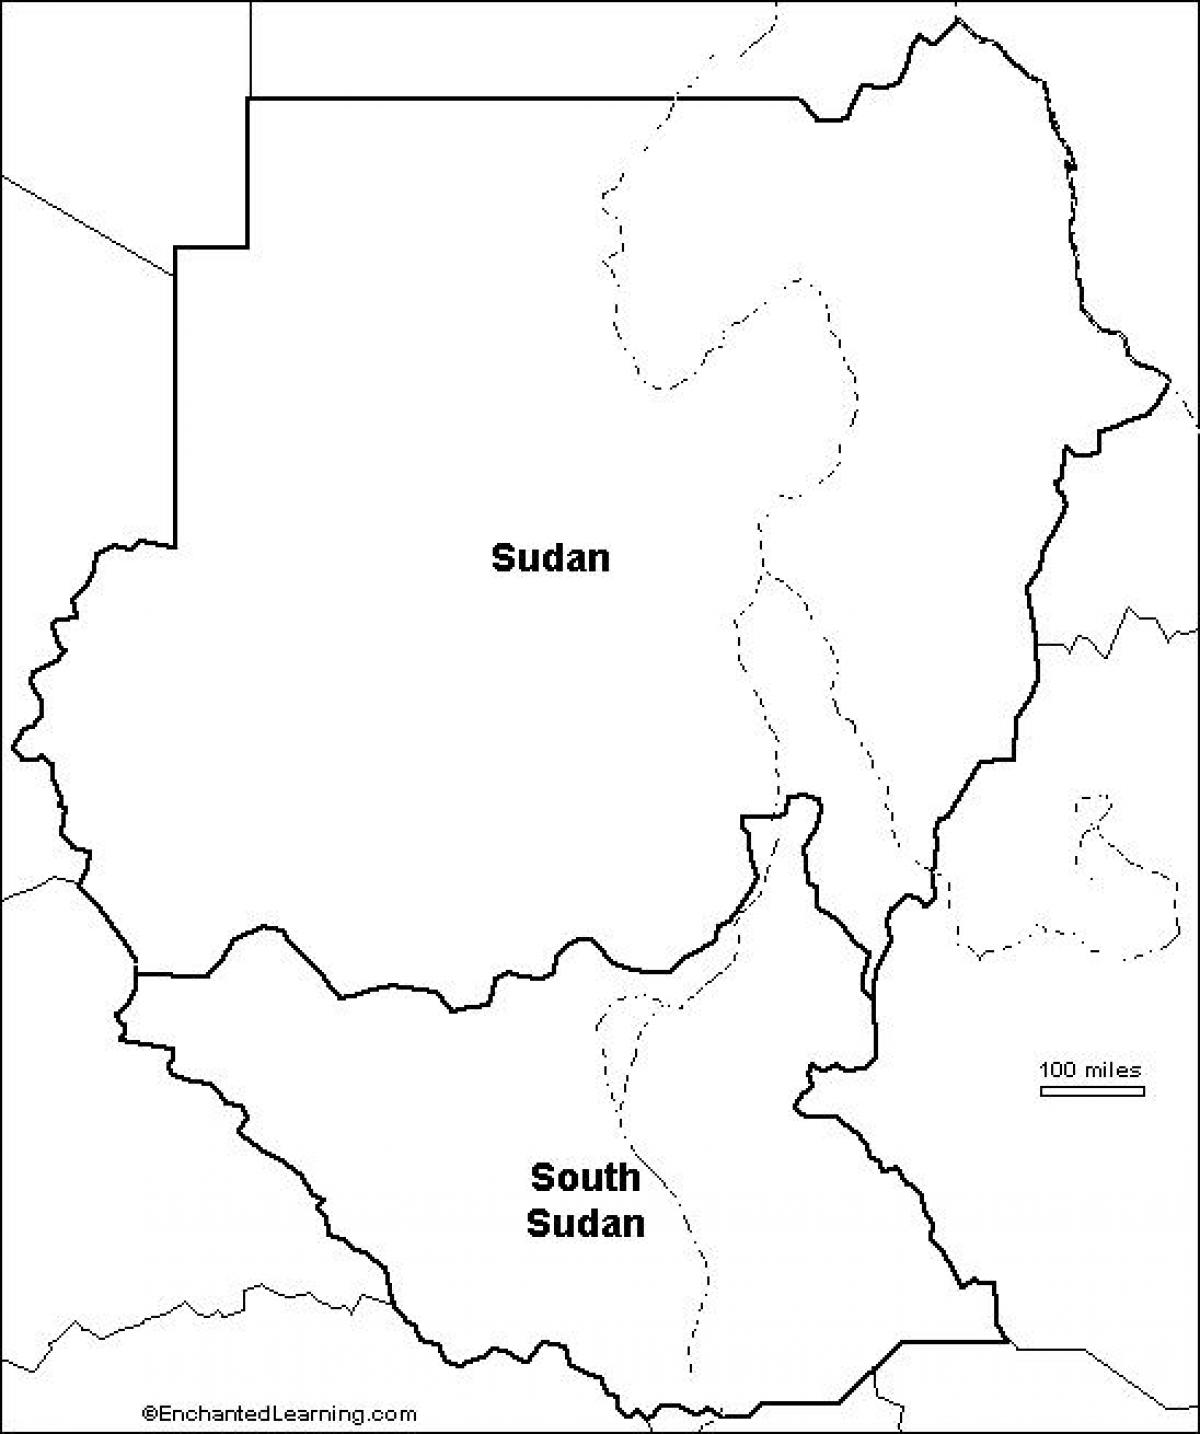 Карта Судана пустой